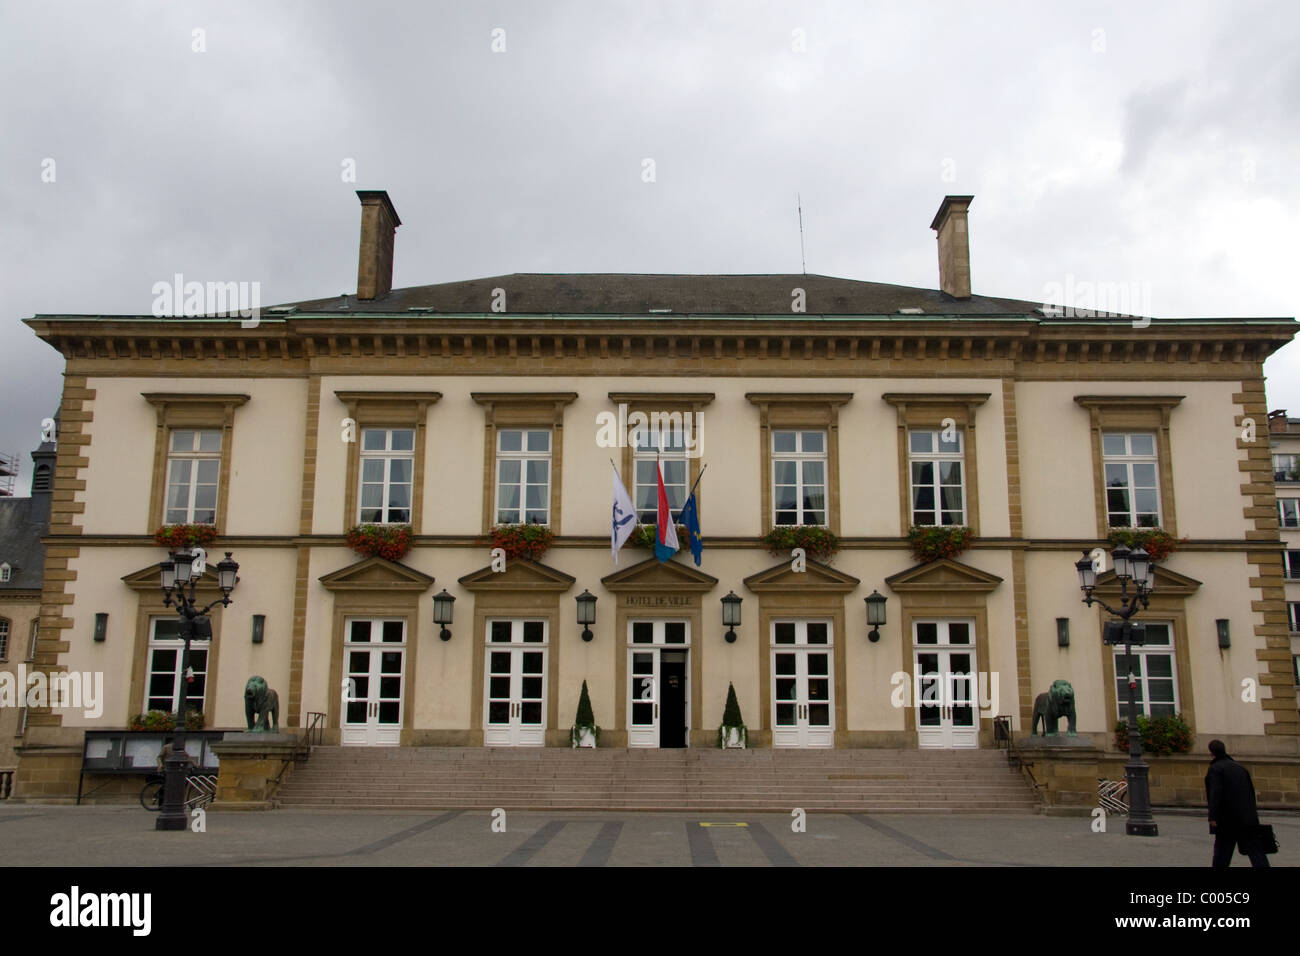 Luxembourg City Hall in Luxembourg City, Luxembourg. Stock Photo